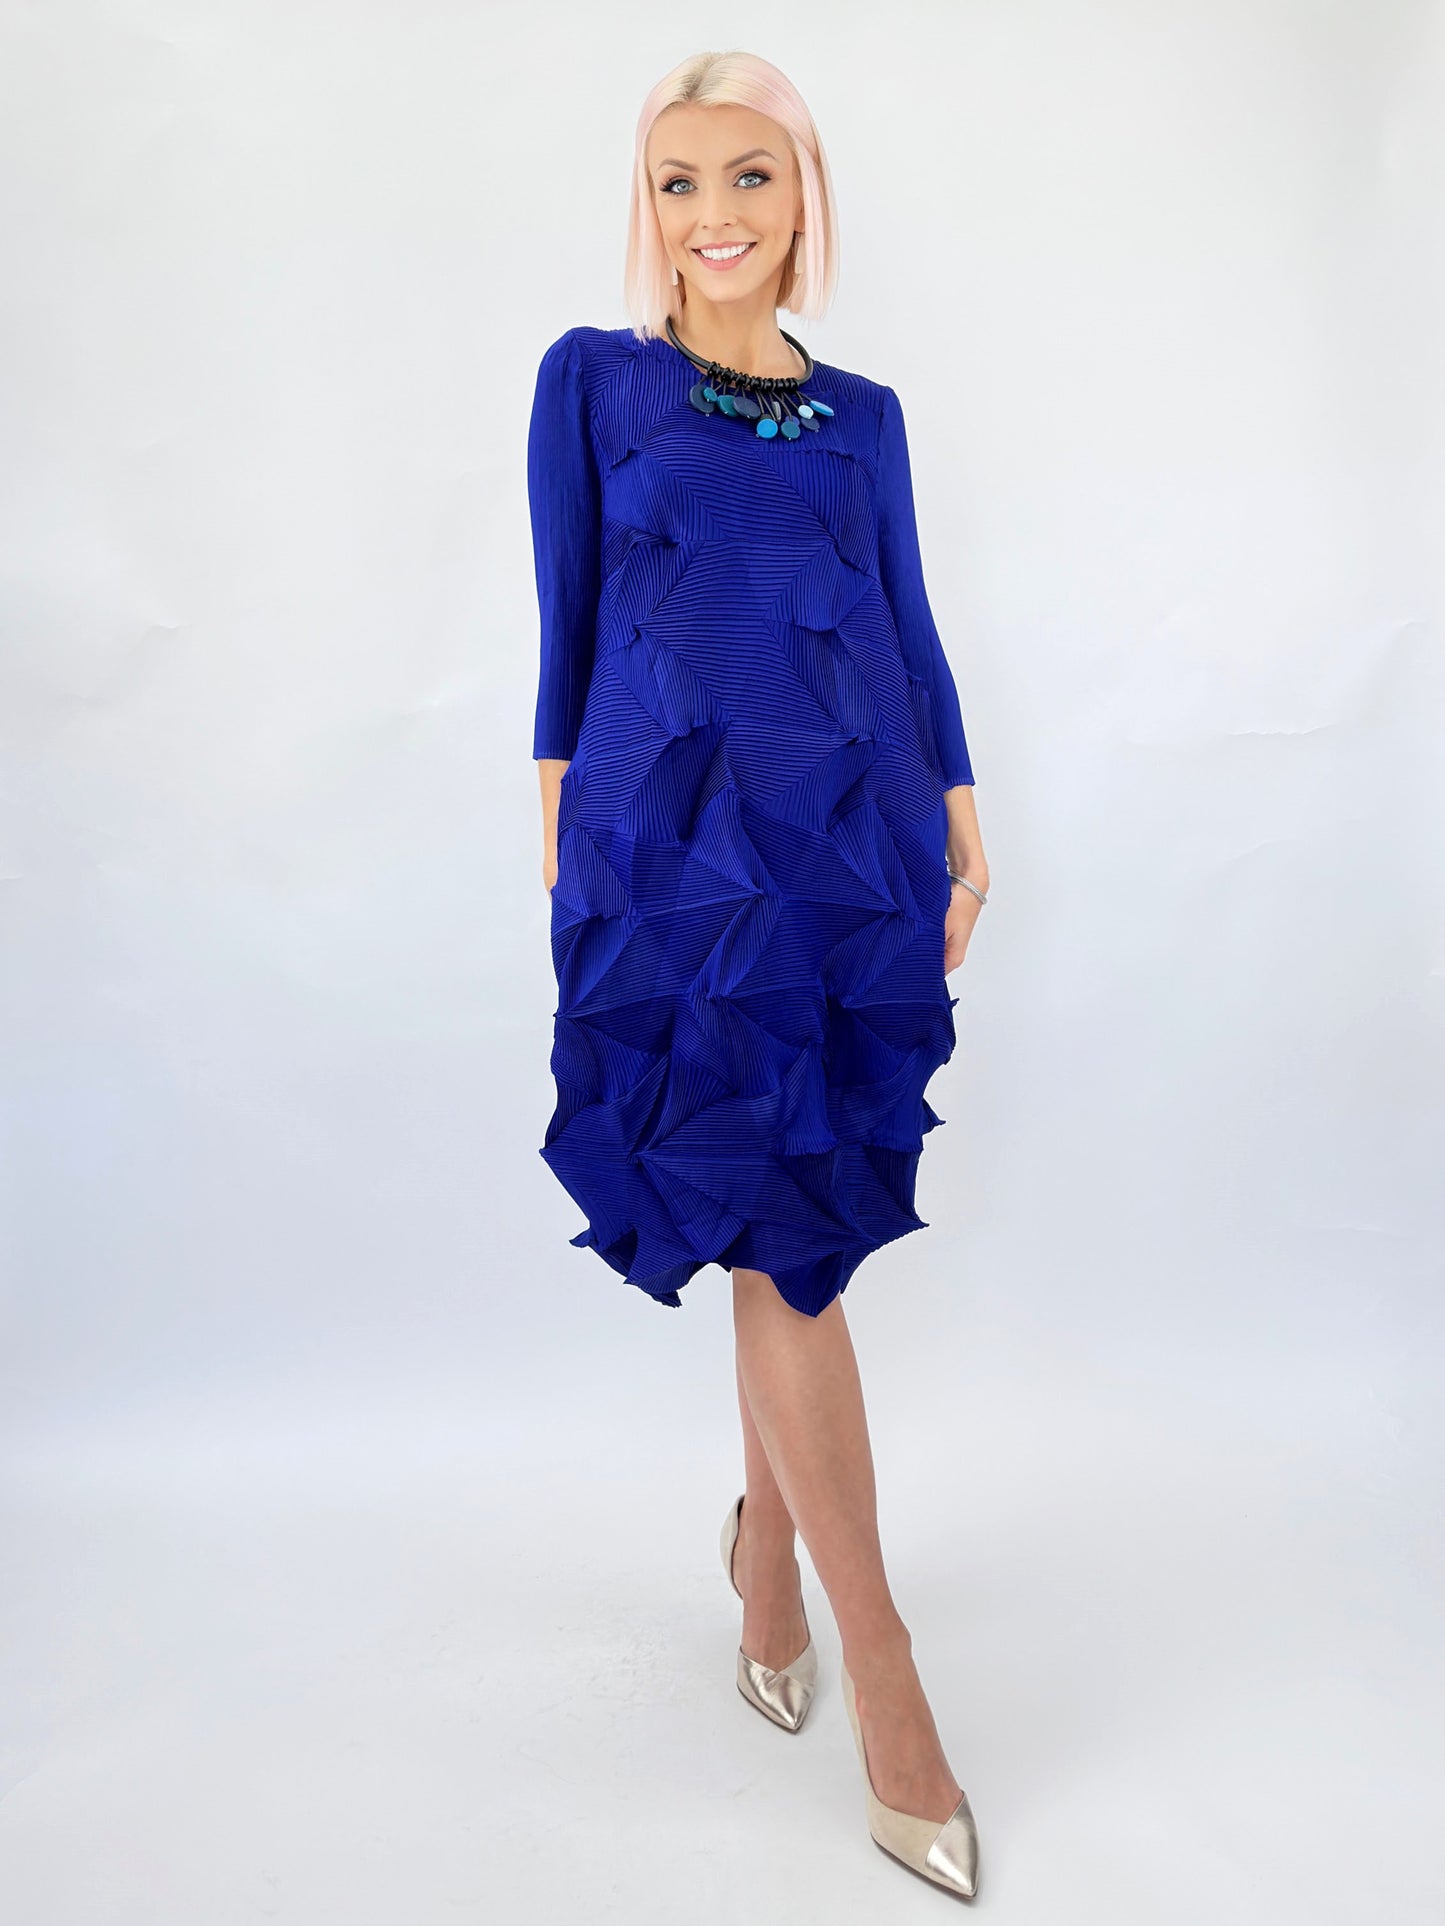 Vanite Couture- Origami Dress